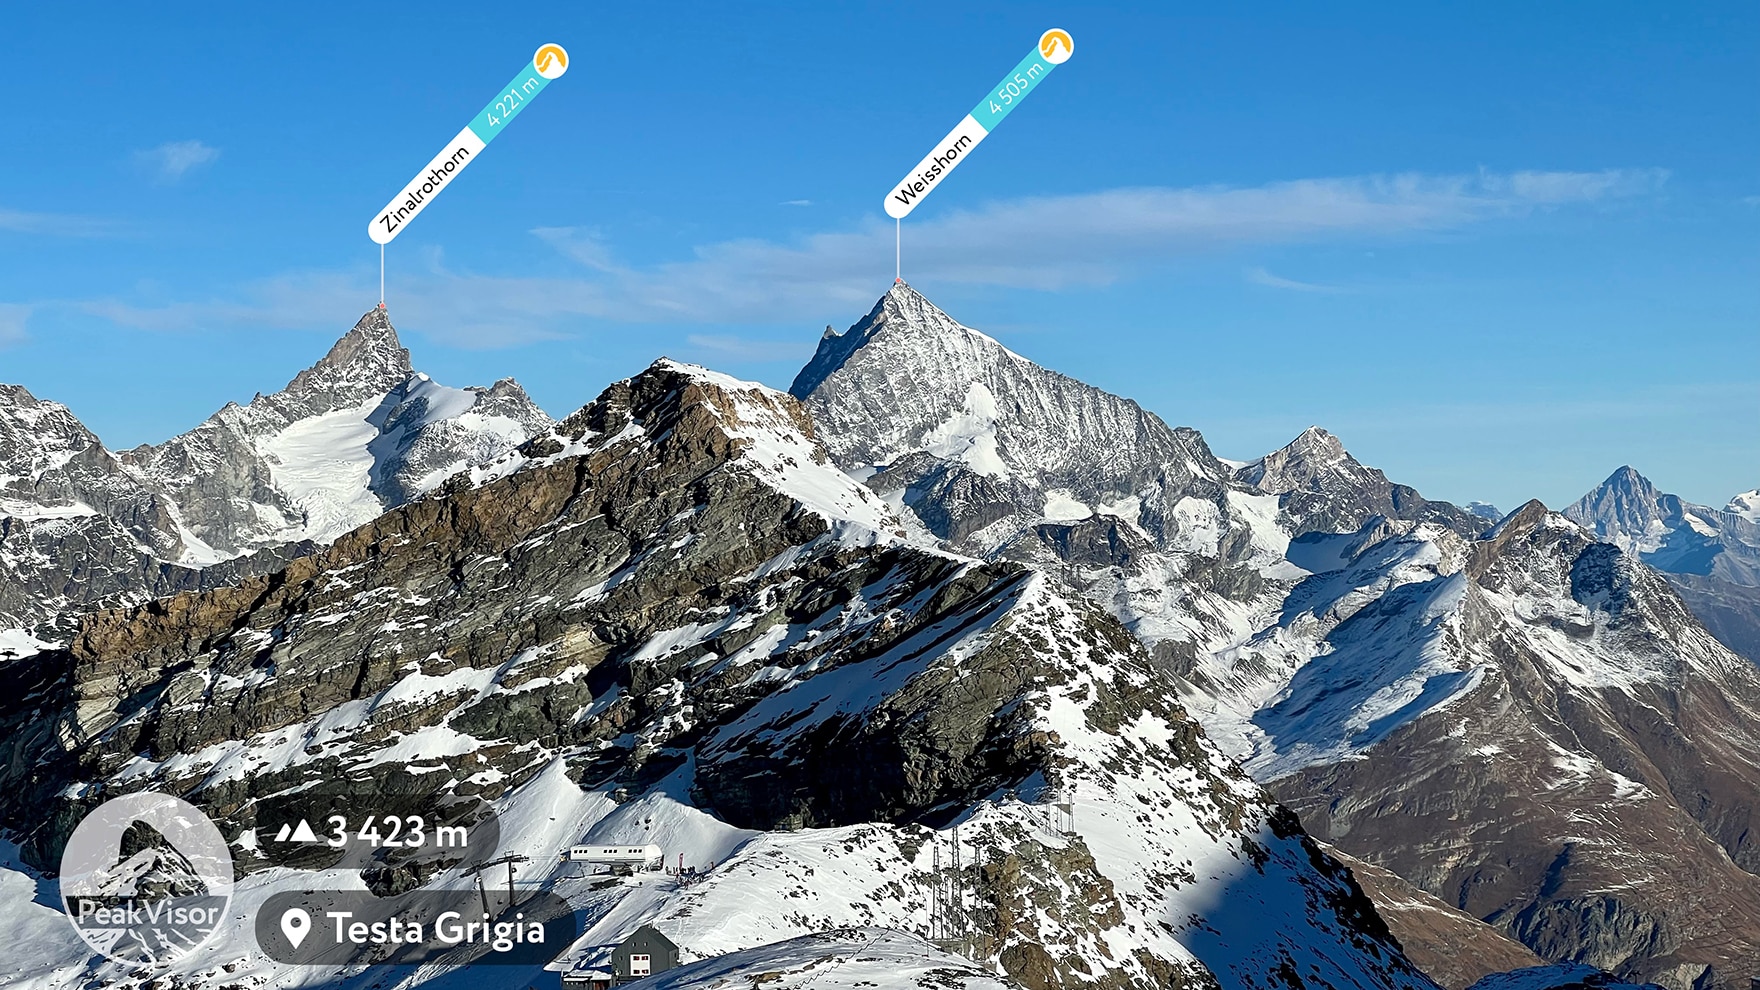 Mit PeakVisor kannst du Gipfel in Echtzeit identifizieren und neue Bergwelten entdecken.